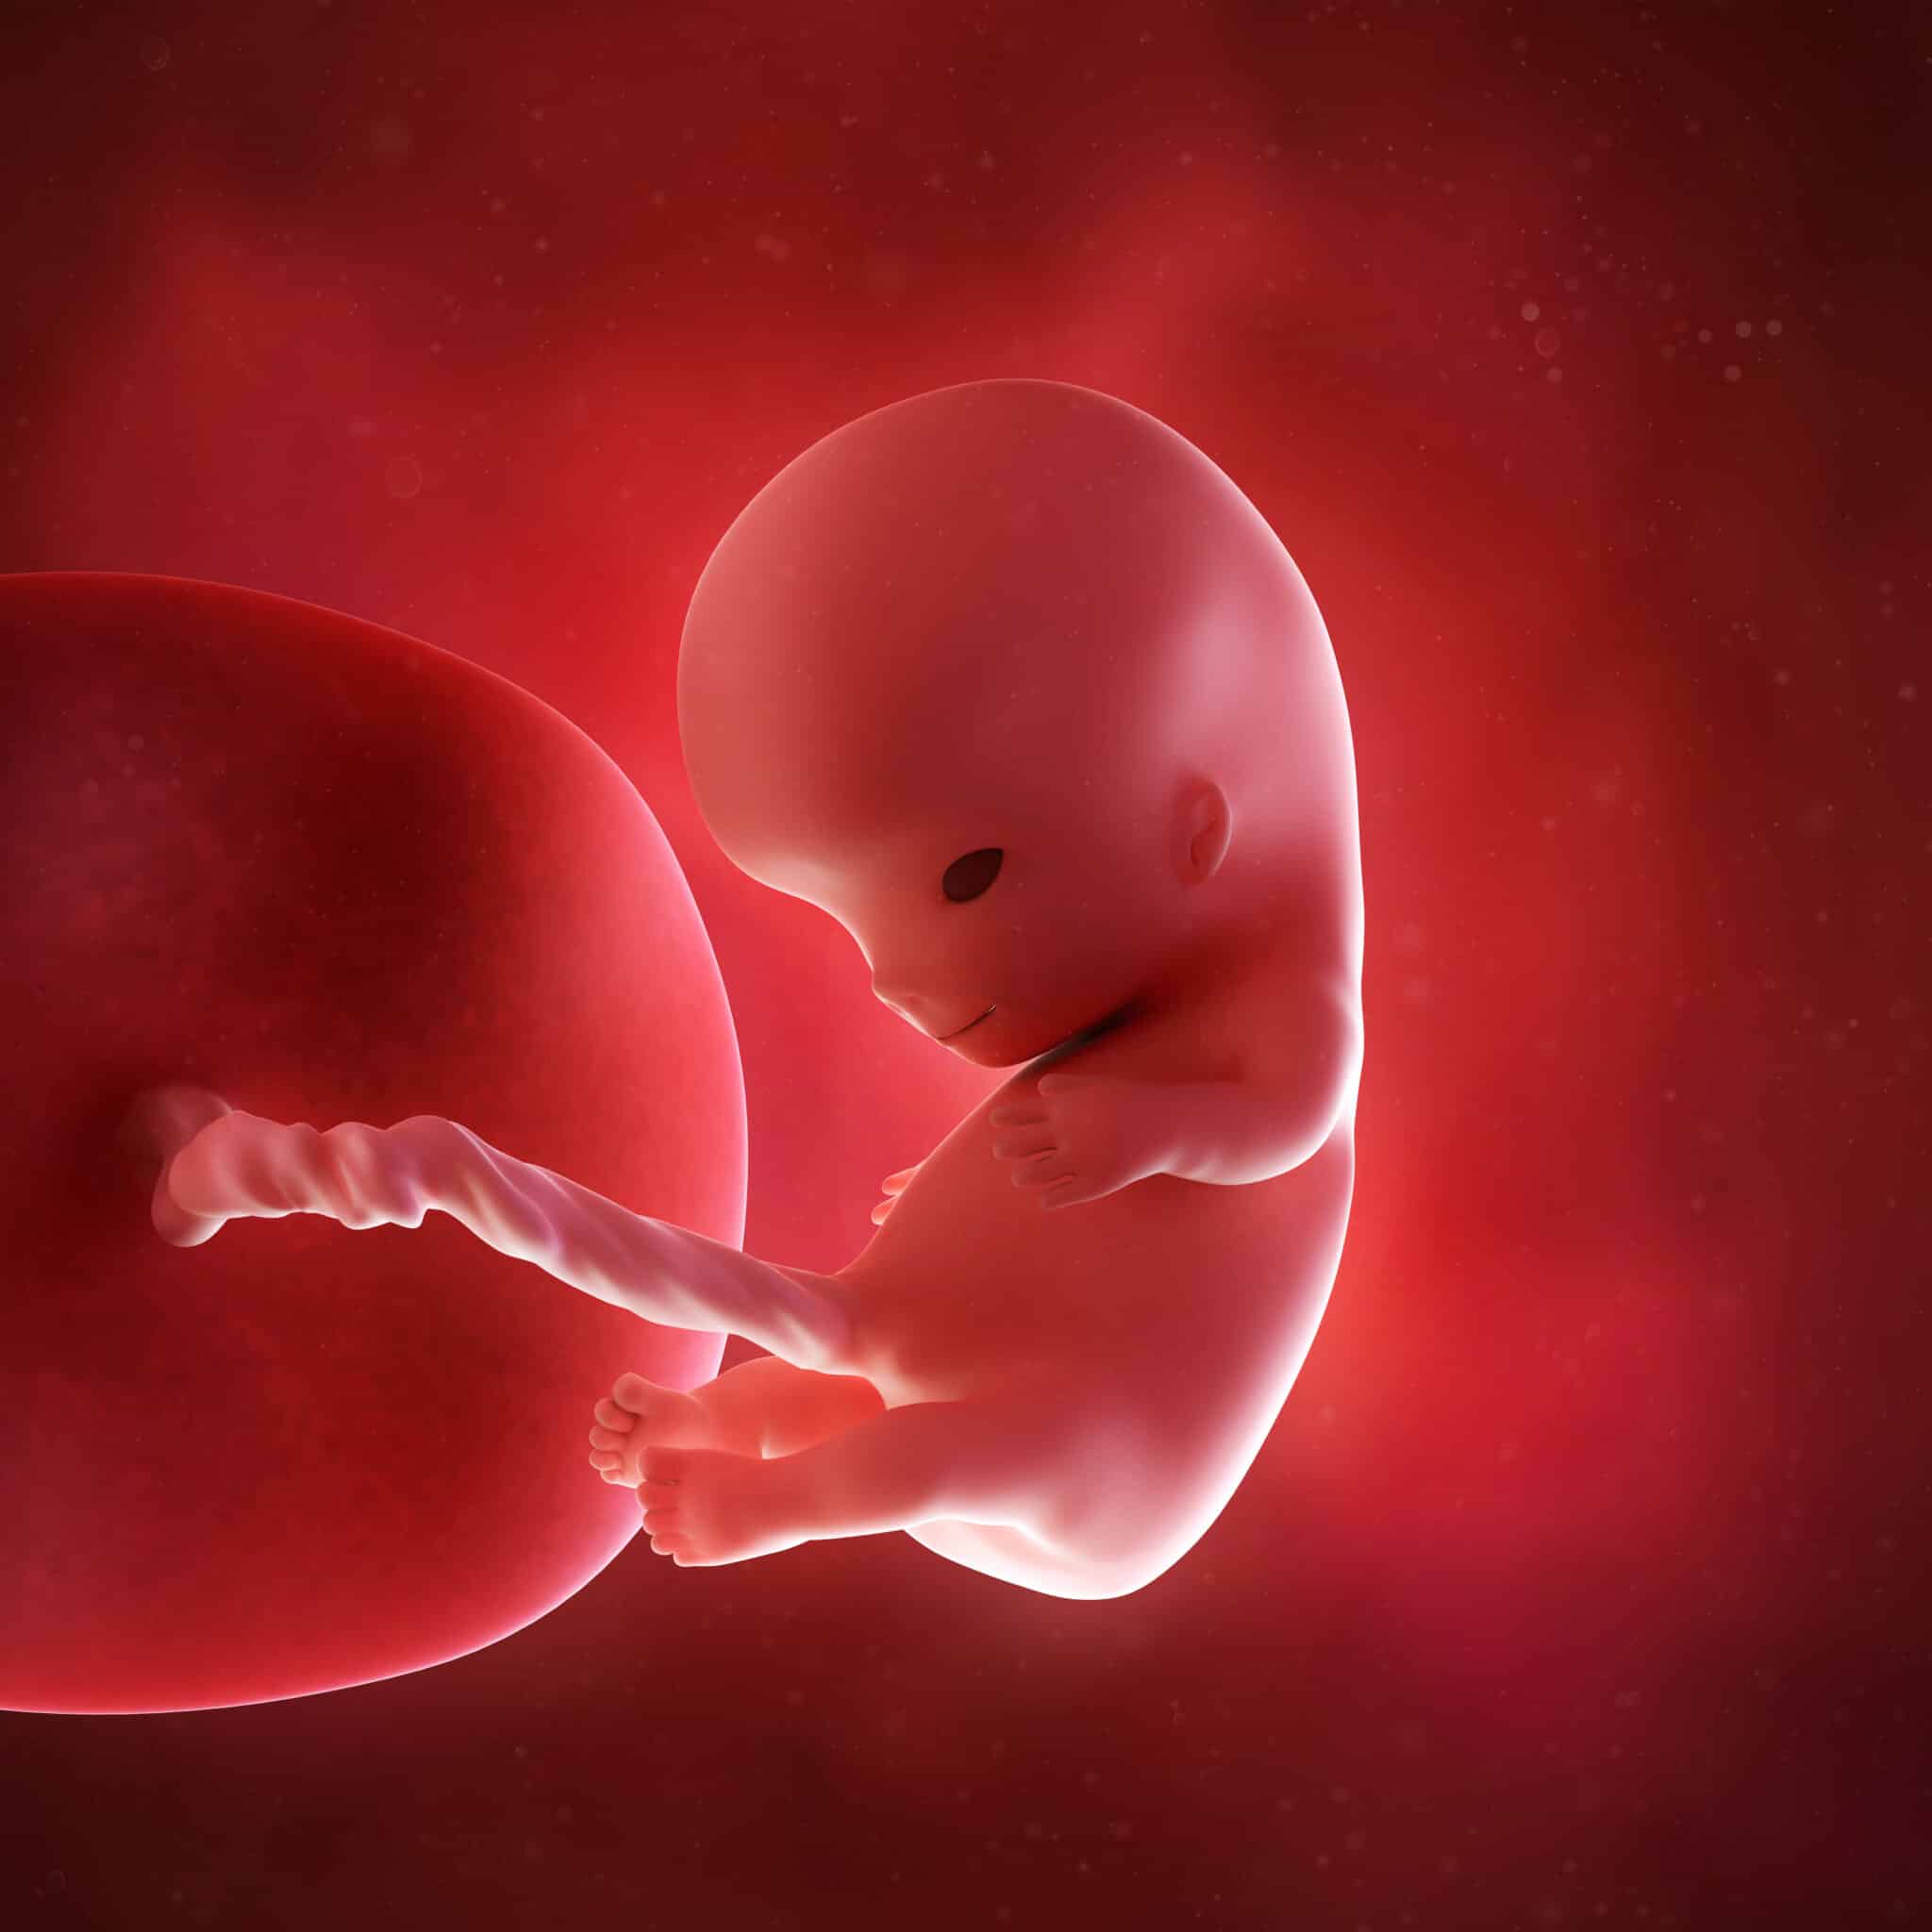 13 акушерская неделя. Эмбрион на 10 неделе беременности. 10 Недель беременности фото плода. Плод 9-10 акушерских недель беременности. Зародыш человека 9-10 недель.